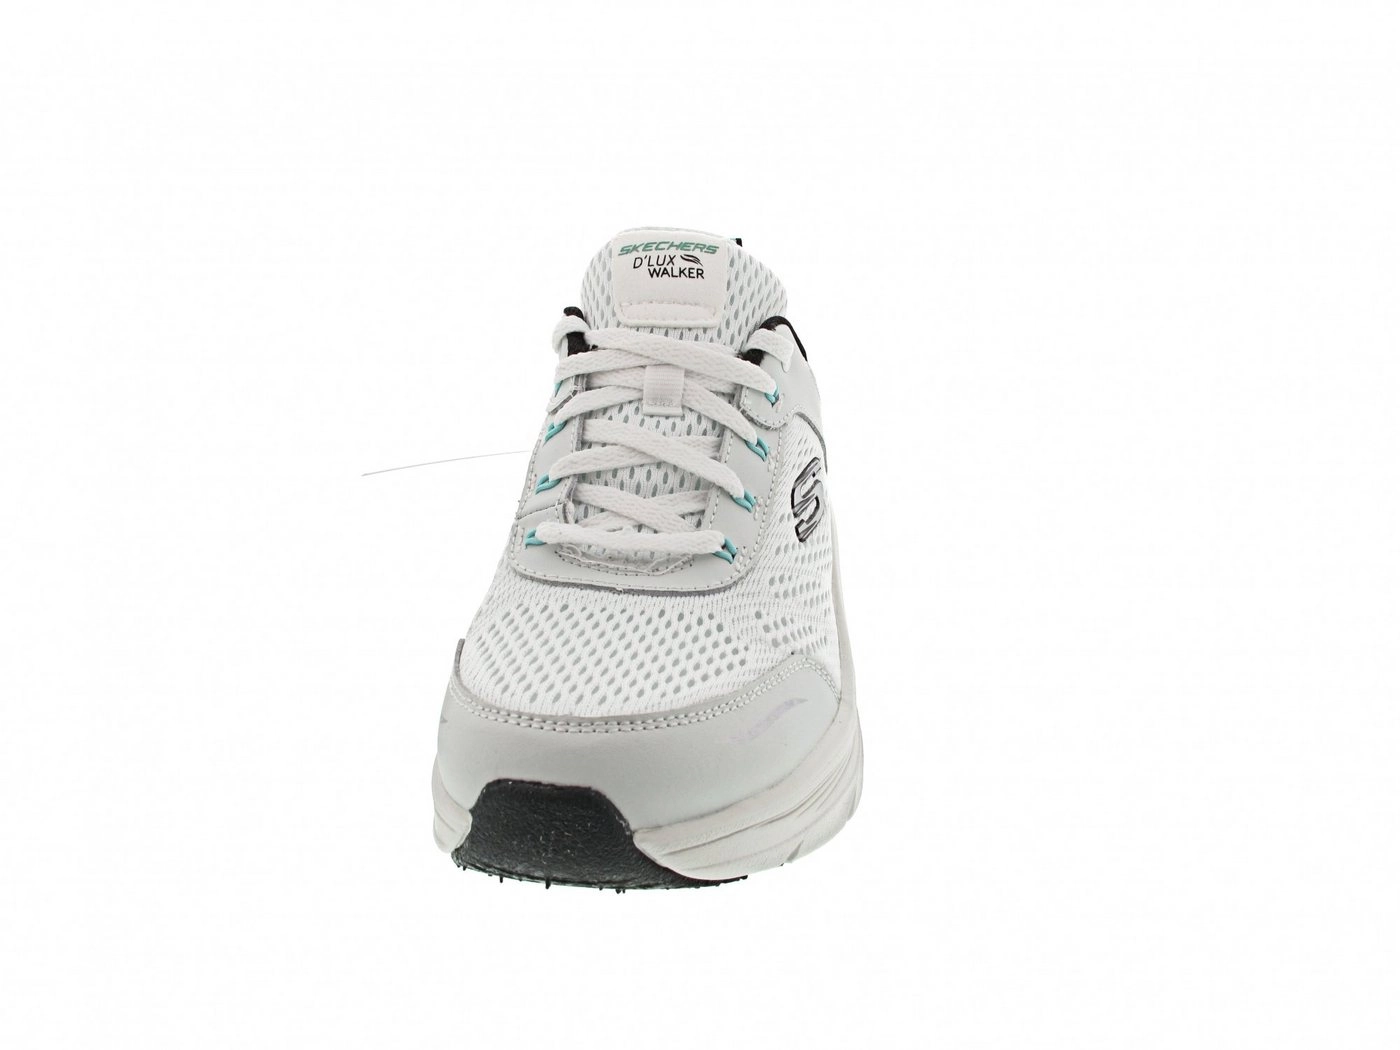 Skechers »Relaxed Fit D*Lux Walker 149023 WBK« Sneaker